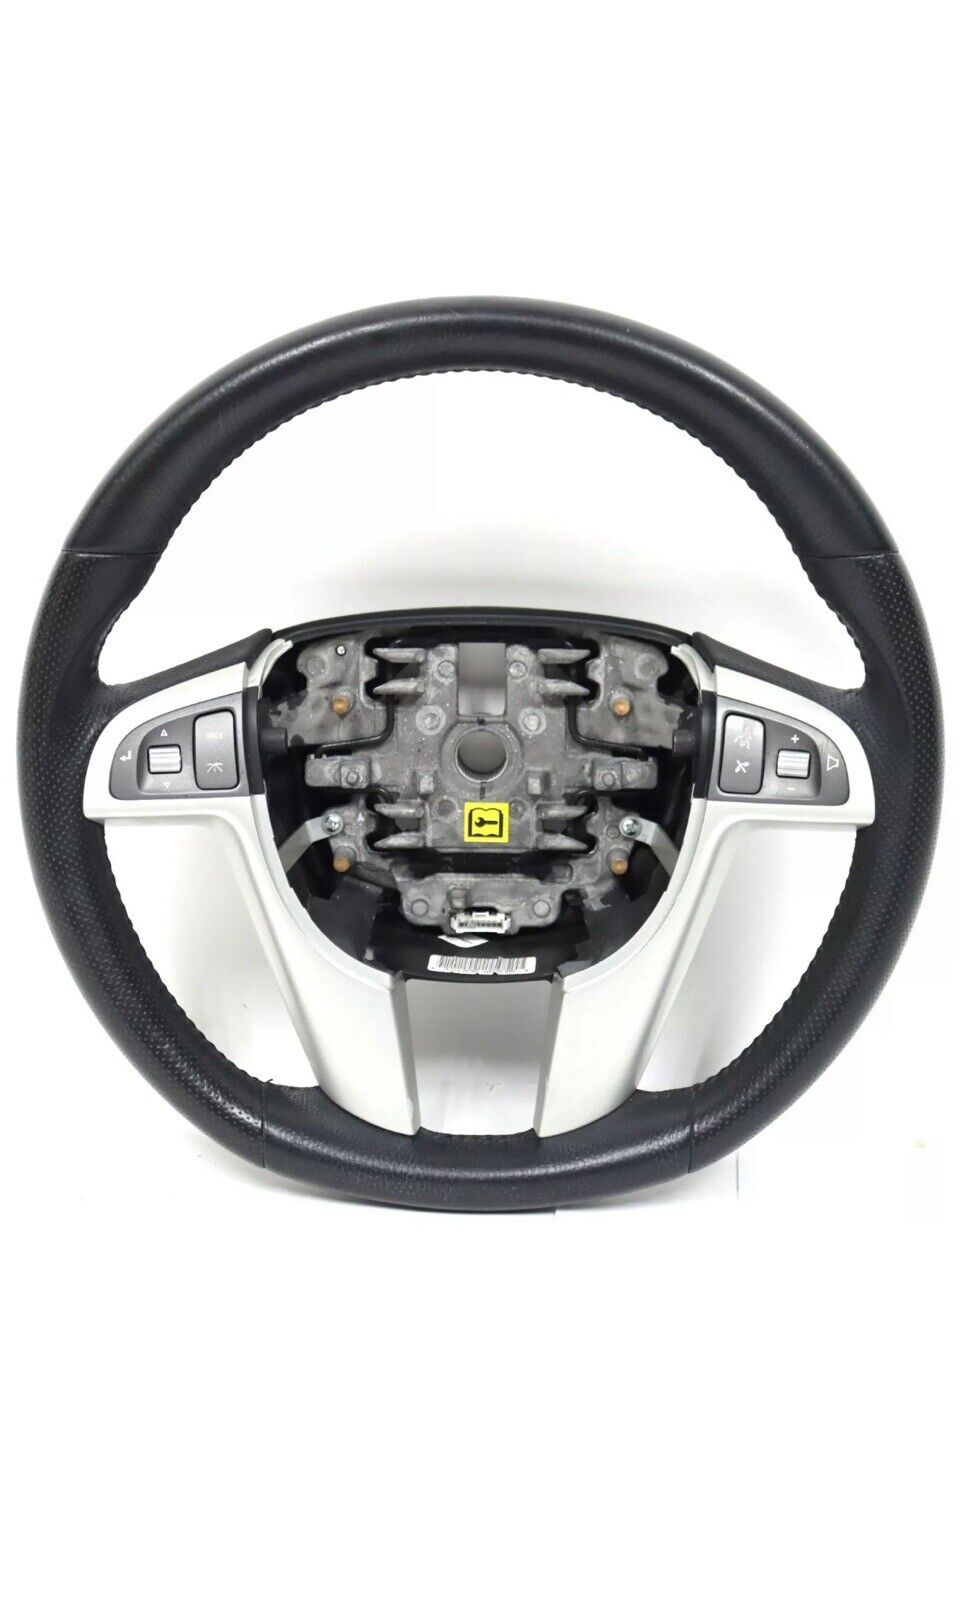 2008 2009 Pontiac G8 Gt Premium Leather Steering Wheel USED OEM GM Part#92217696